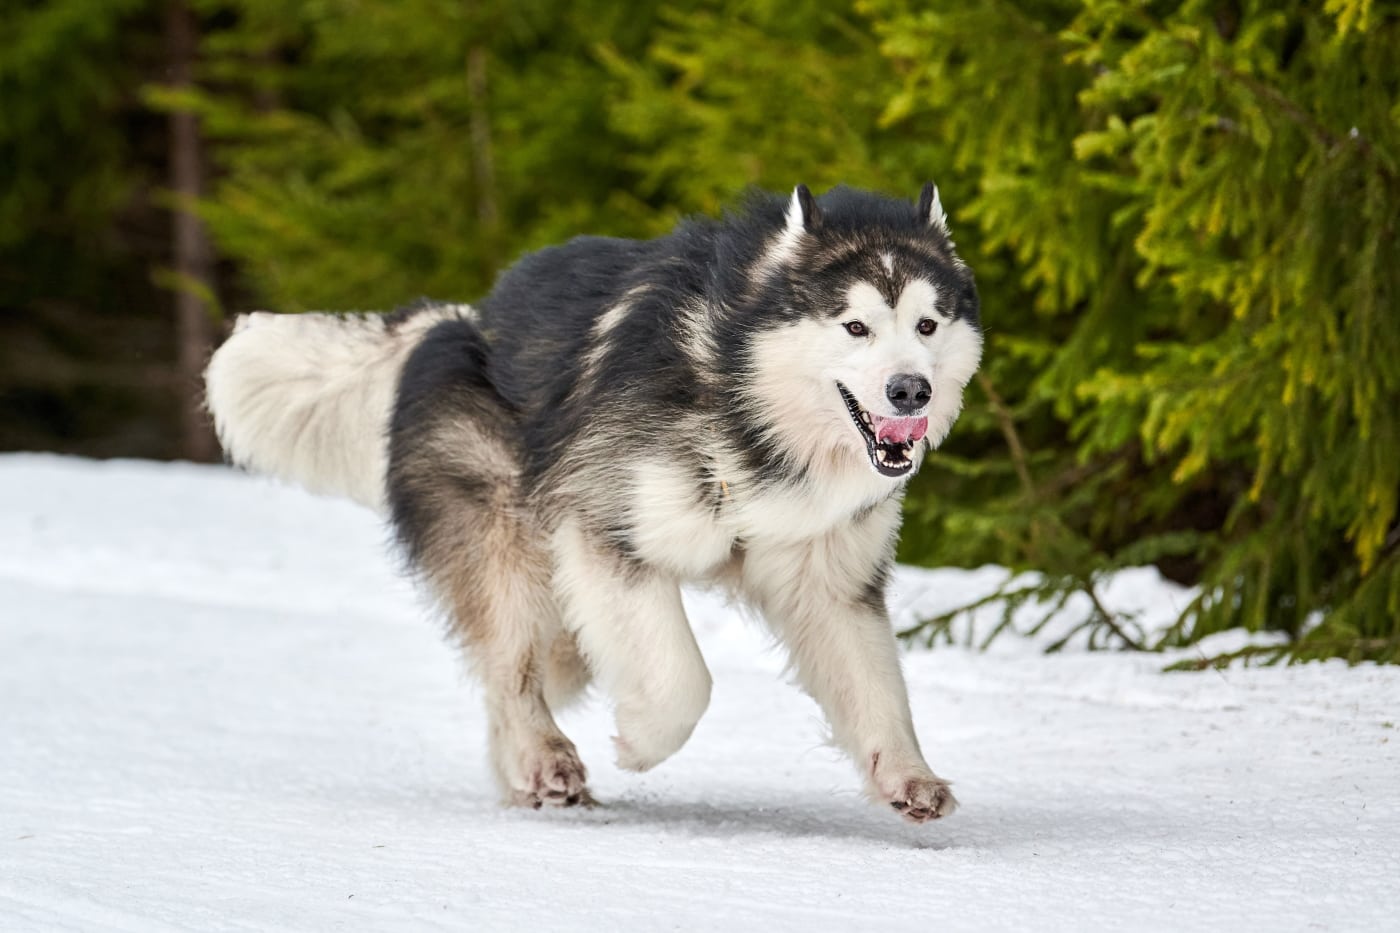 An Alaskan Malamute dog running in the snow